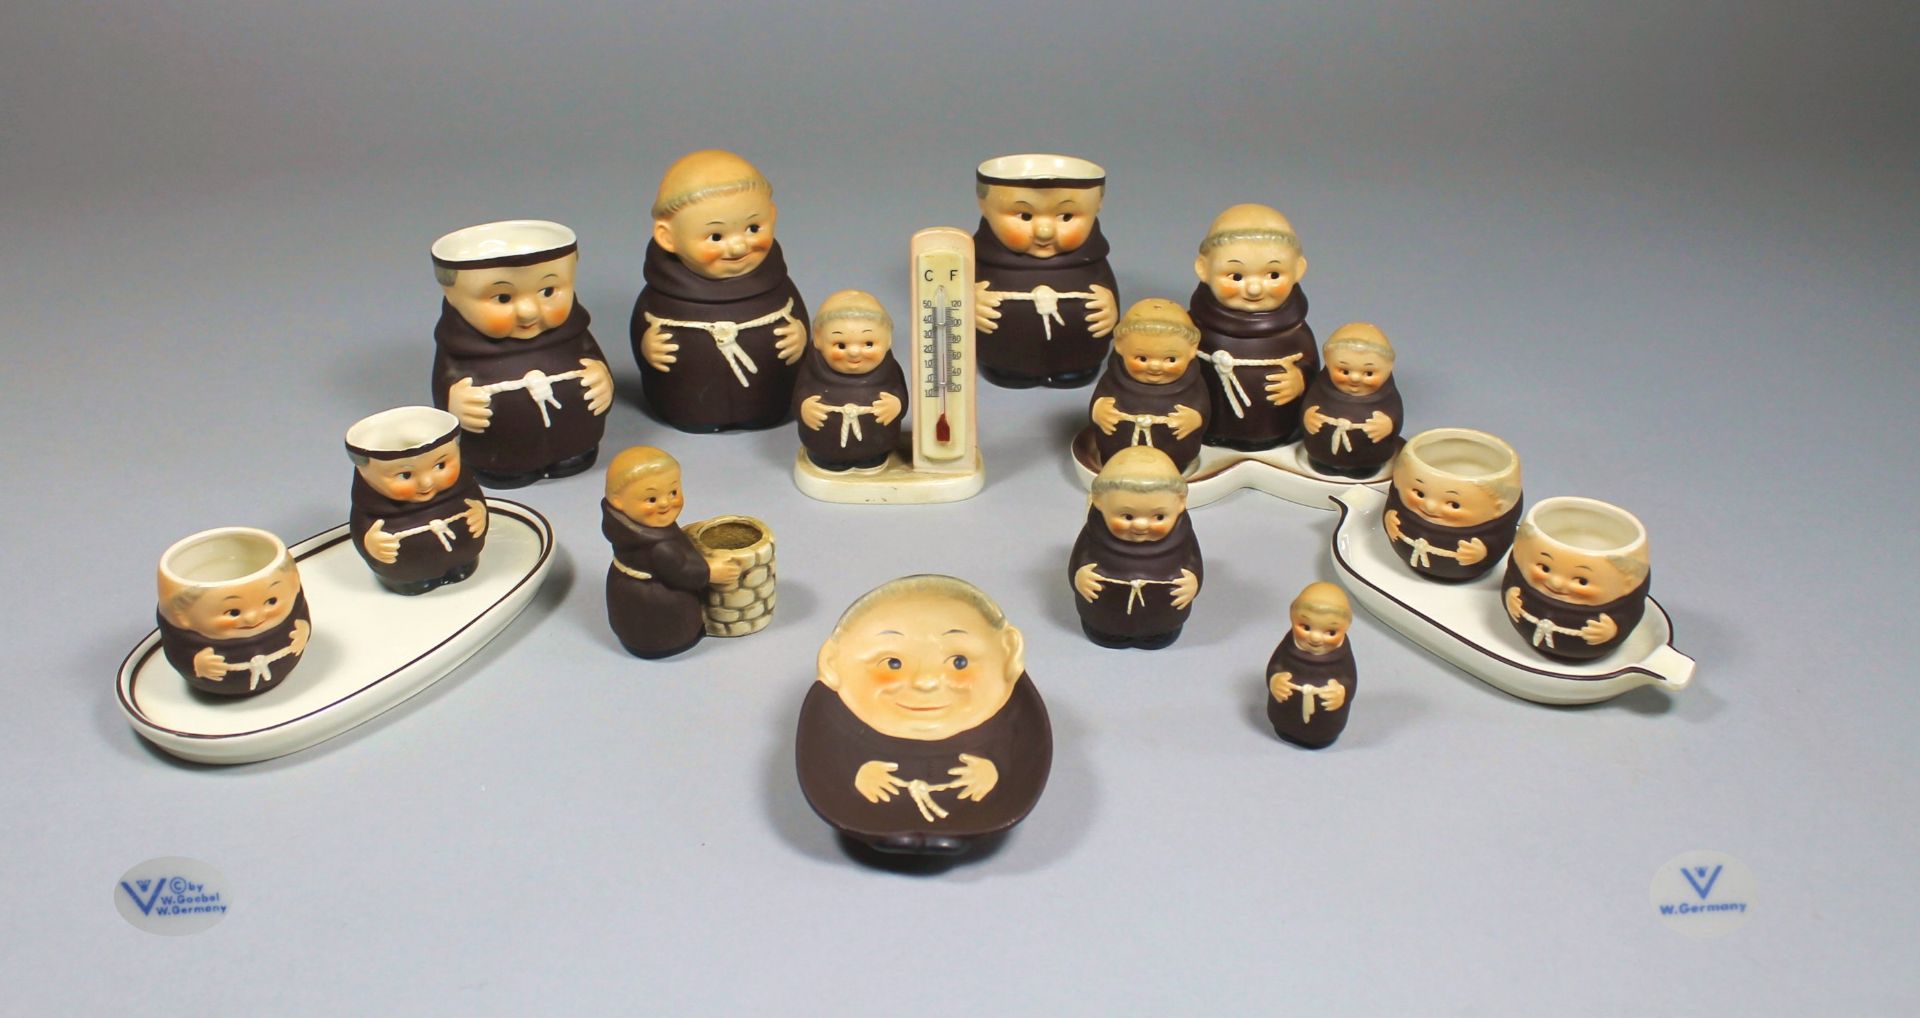 1 kleine Sammlung von Mönchsfiguren "Goebel", Salz-und Pefferstreuer, kleine Krüge, Aschenbecher,